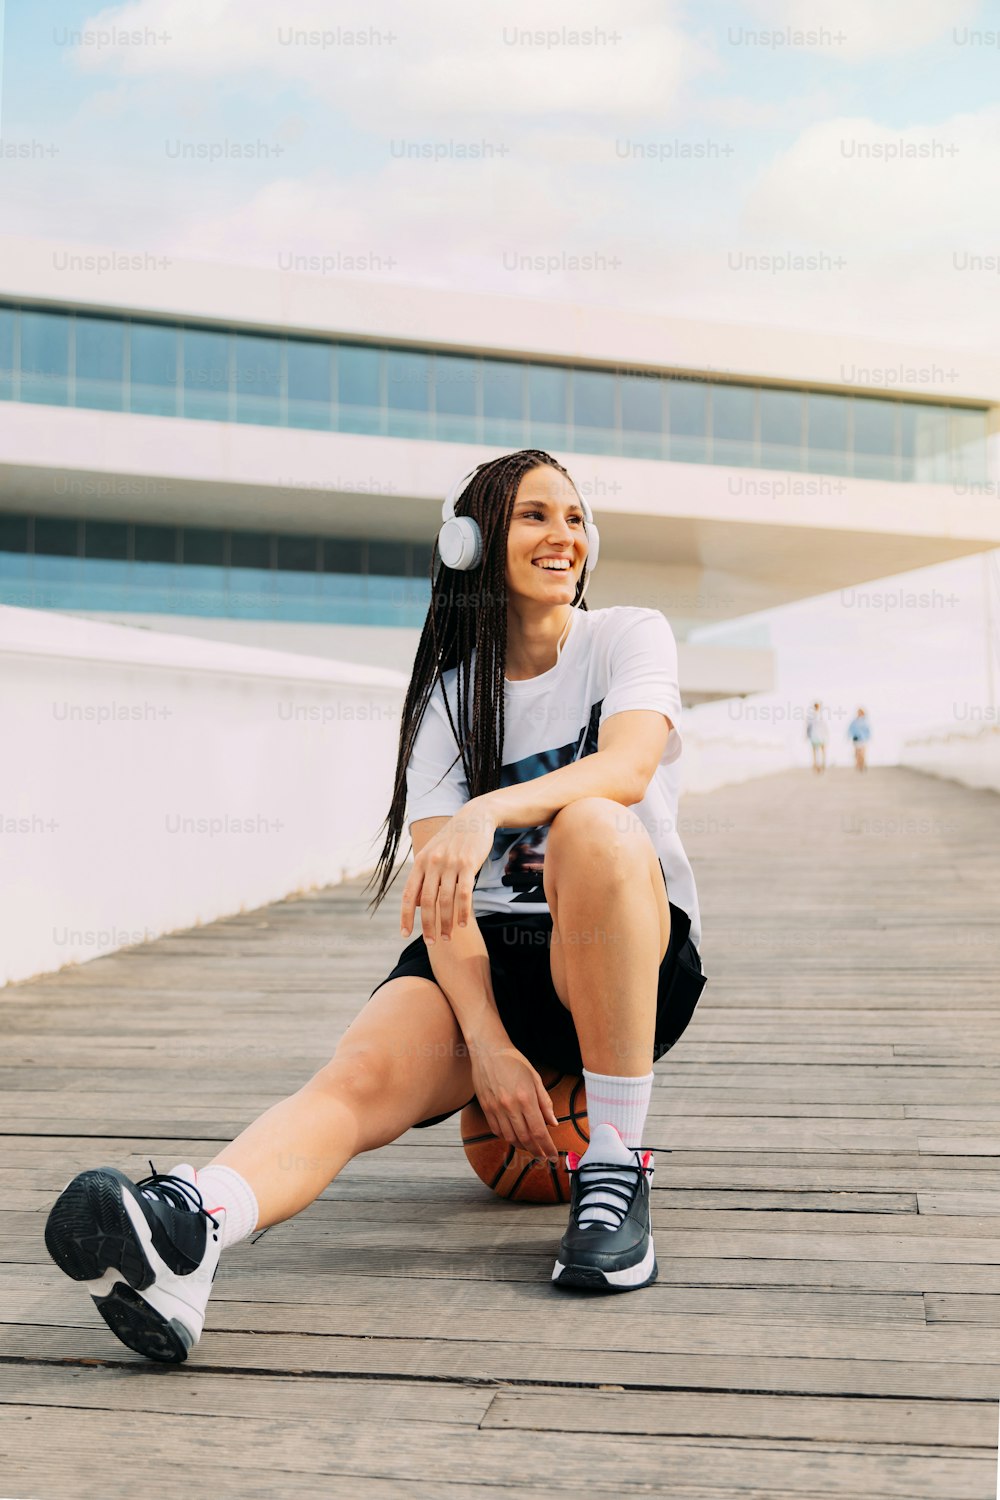 Mujer sonriente escuchando música con auriculares, ropa deportiva urbana sentada en una pelota de baloncesto. Con edificio de vidrio futurista en el fondo. Felicidad y deporte